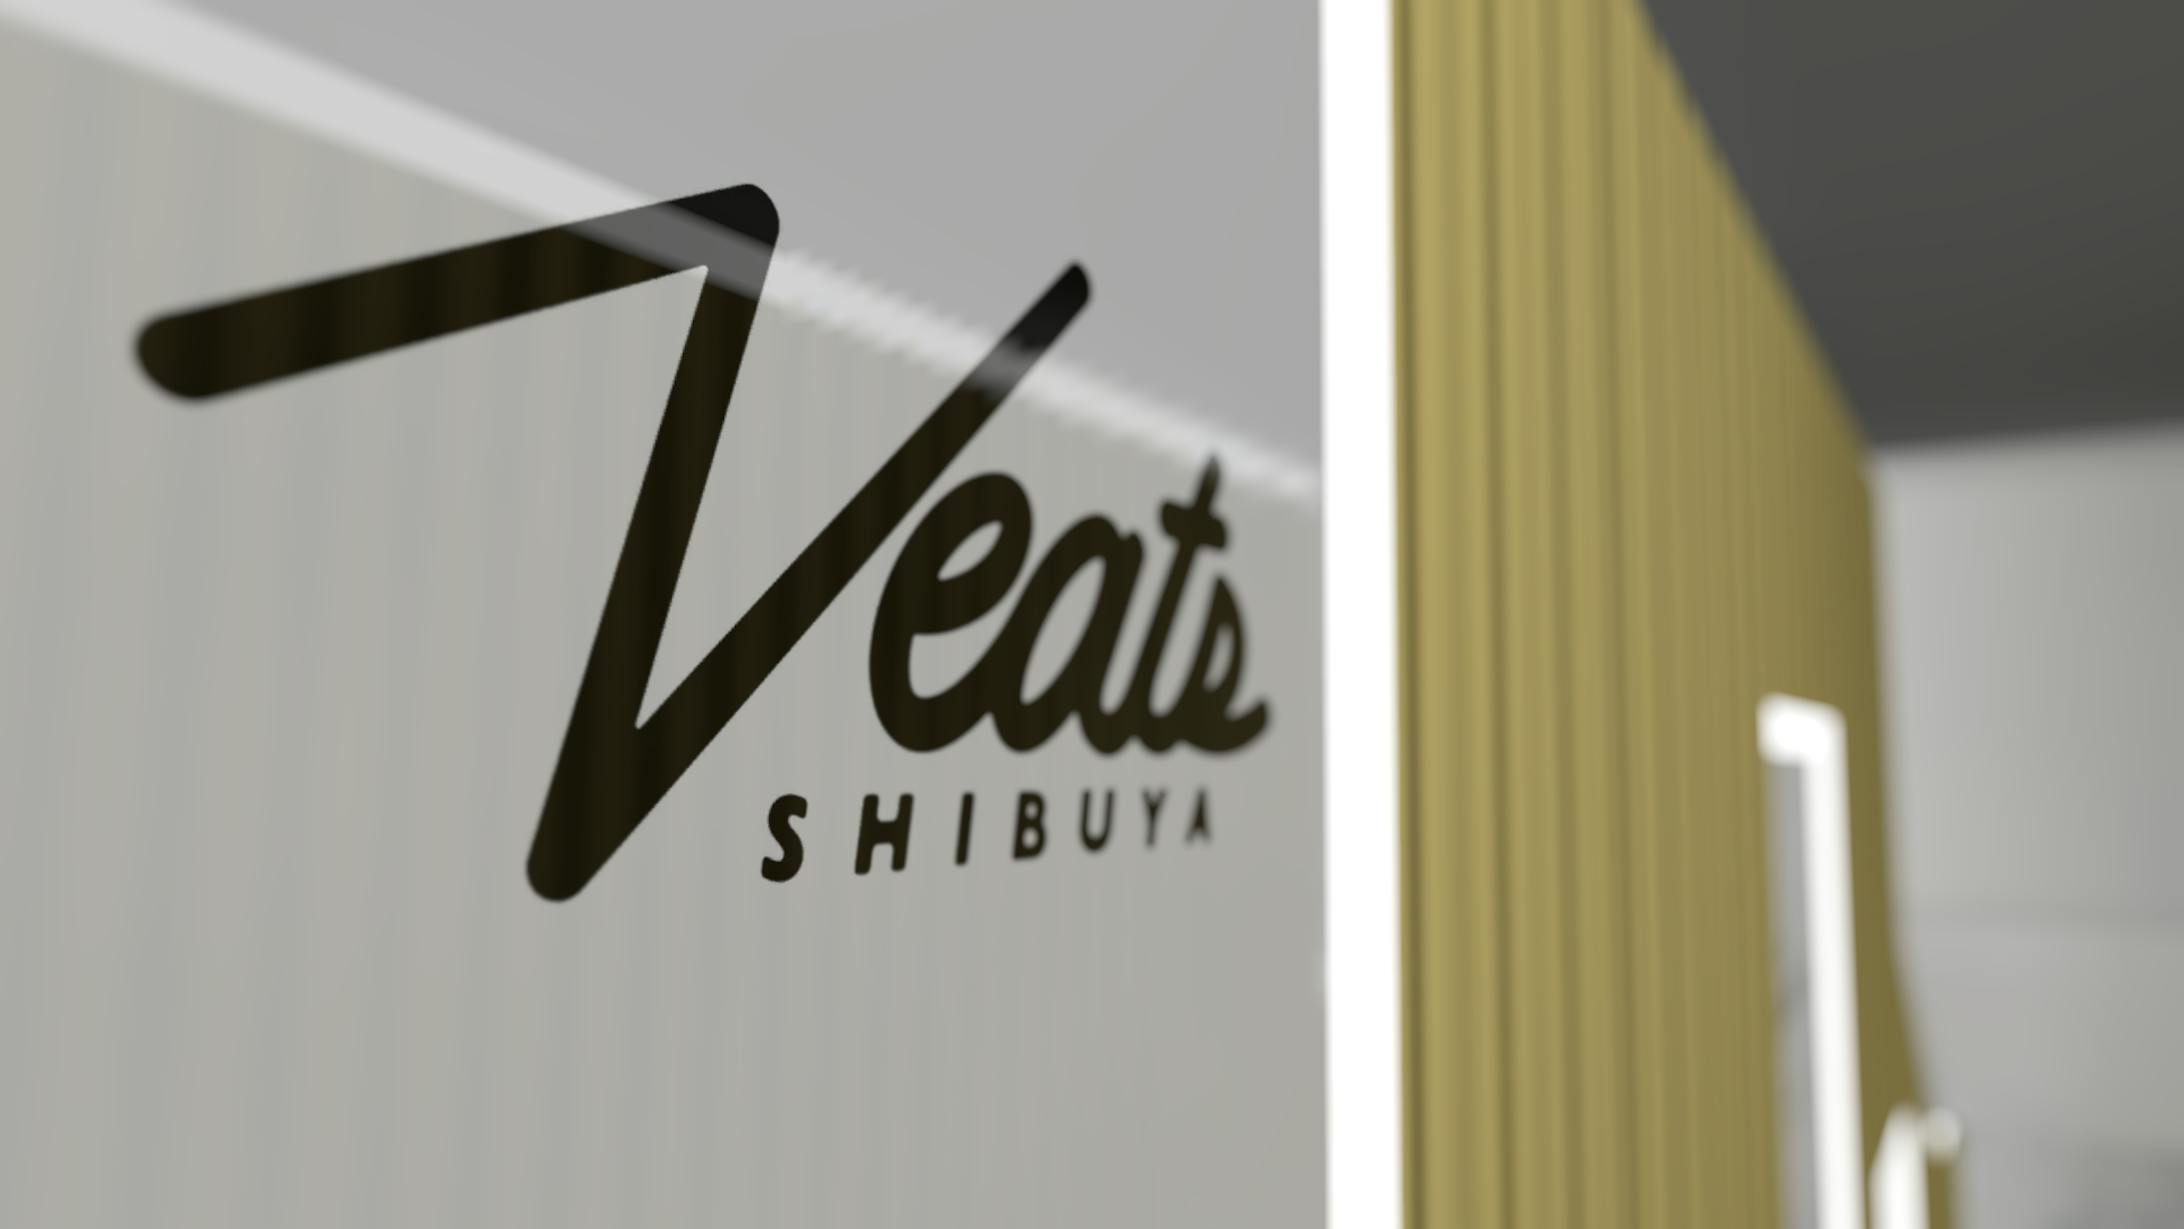  Veats SHIBUYA VRライブ-1